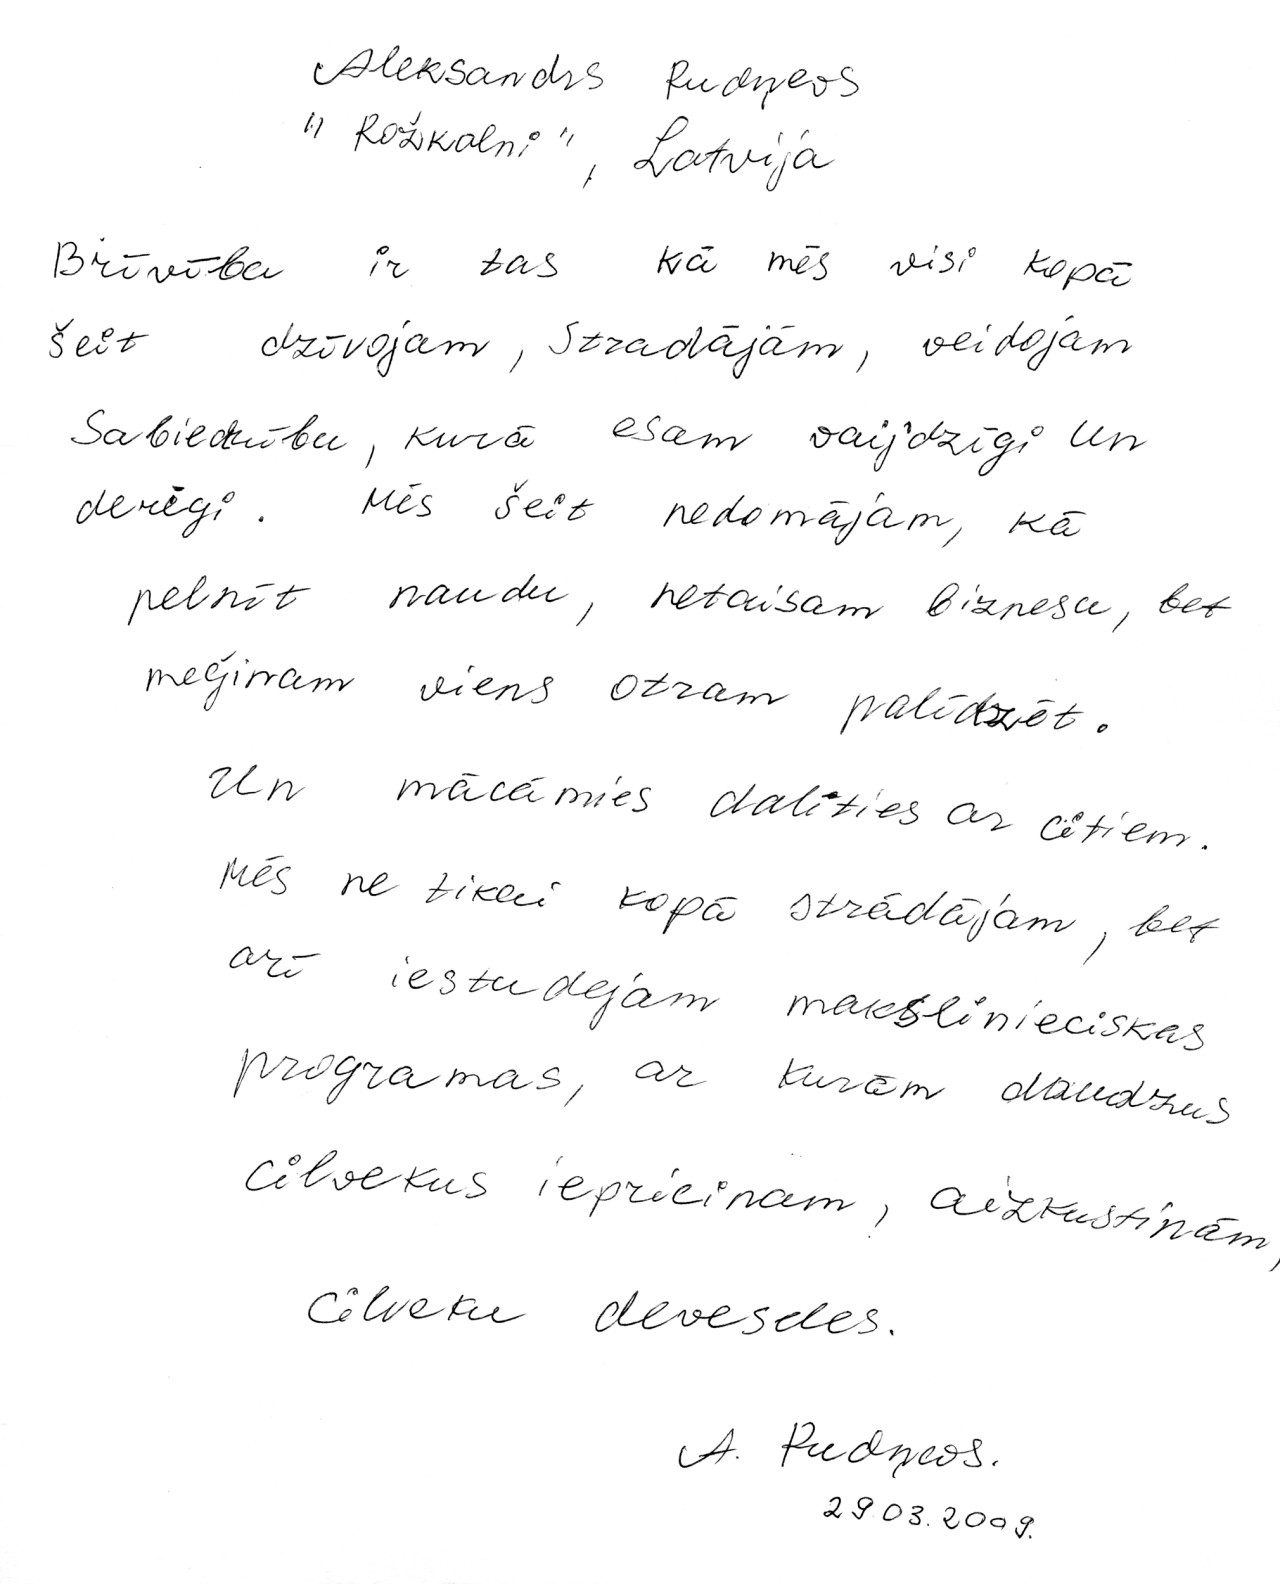 Photo of original, handwritten definition